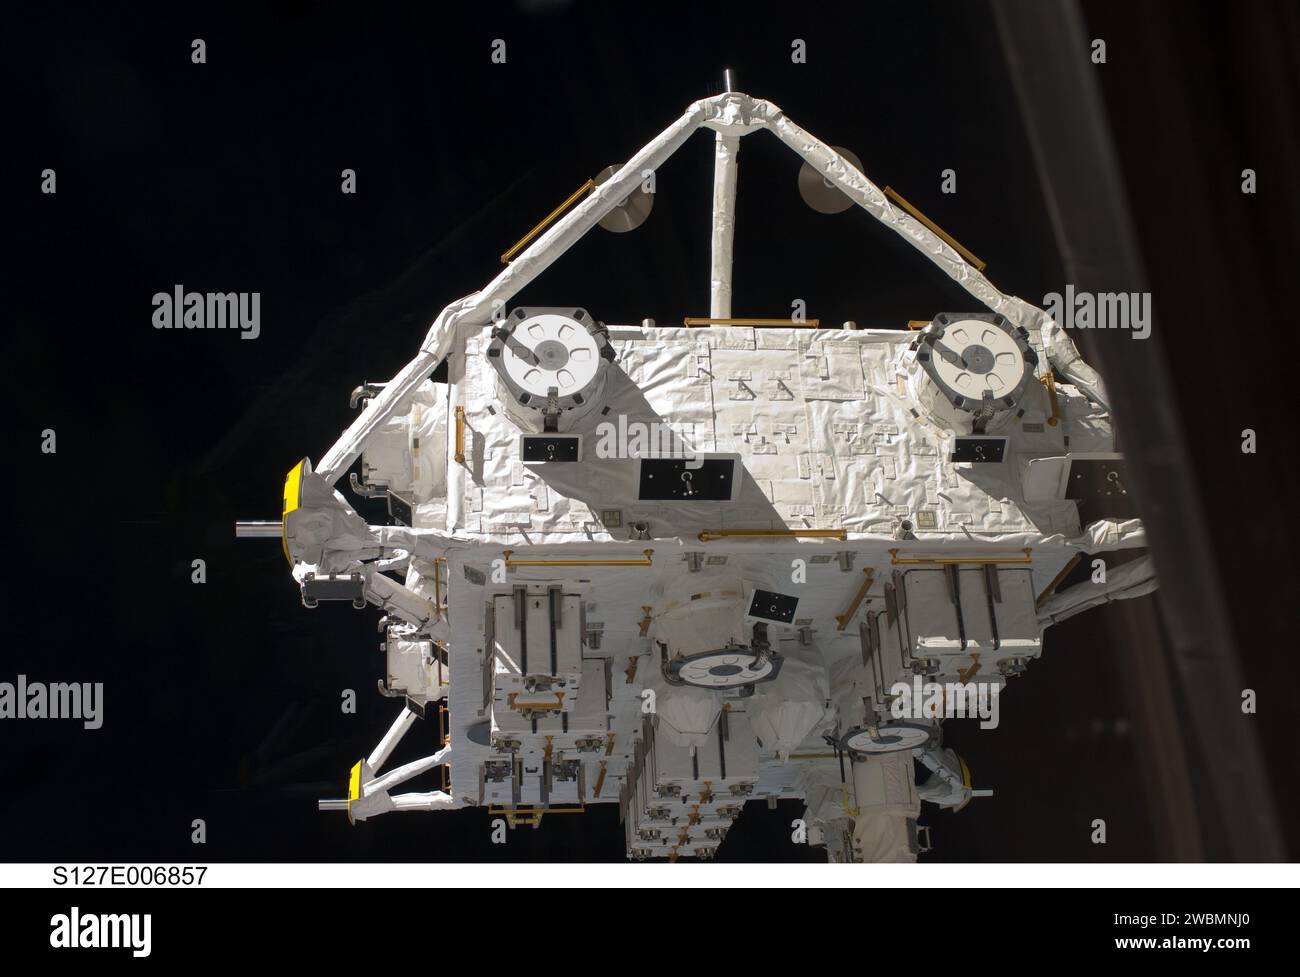 S127-E-006857 (18. Juli 2009) --- das Japanische Experimentmodul - Exposed Facility (JEF) ist im Griff des RMS-Arms (Remote Manipulator System) des Space Shuttle Endeavour (außerhalb des Rahmens) während der Robotik-Aktivität am vierten Flugtag abgebildet. Astronauten begannen an diesem Tag auch eine Reihe von fünf Raumwanderungen, um die Arbeit an der Internationalen Raumstation fortzusetzen. Stockfoto